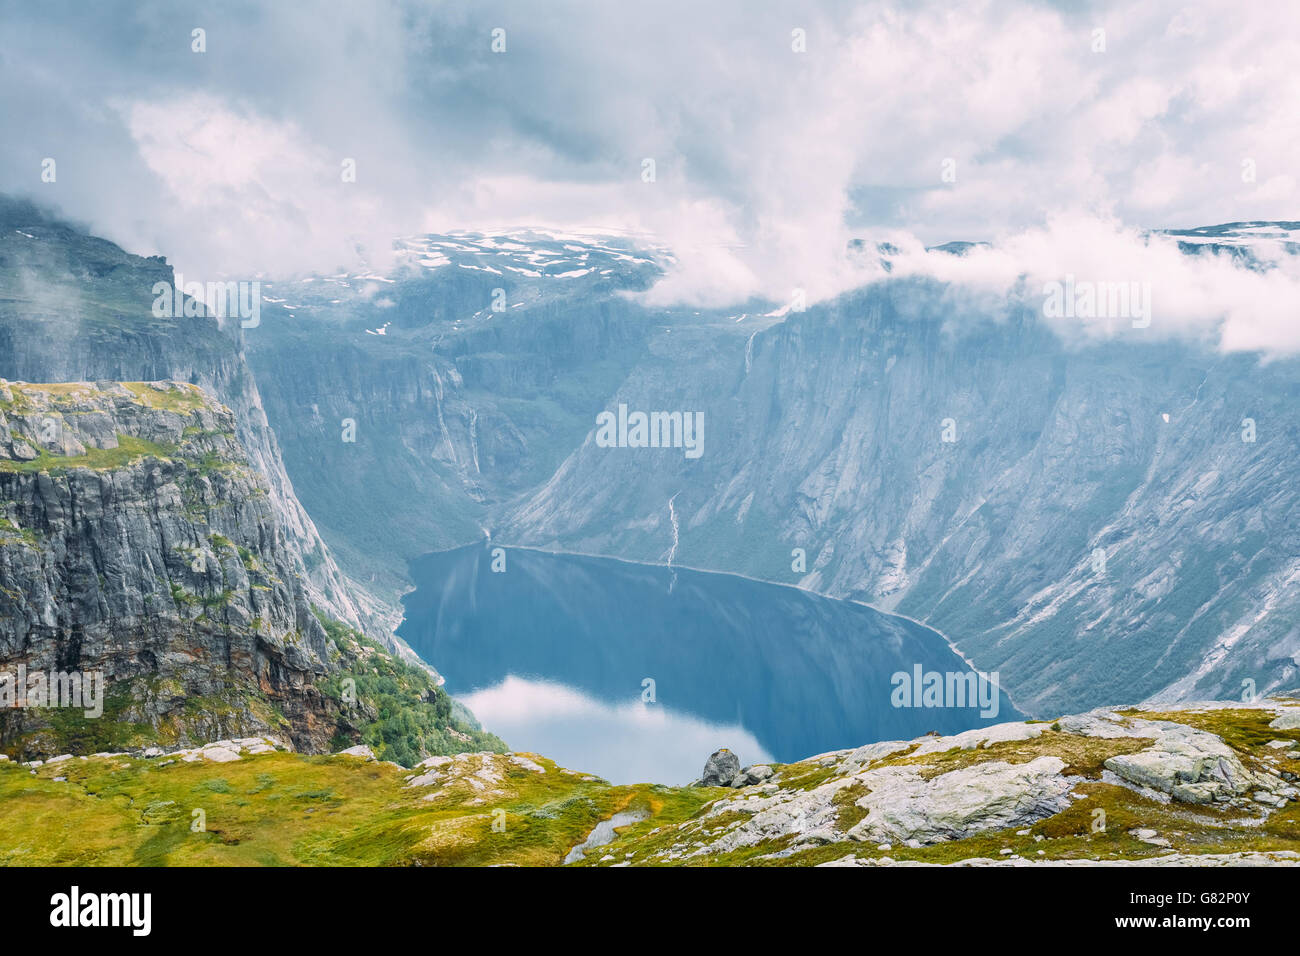 Wunderschönen norwegischen Bergen und blauen Tiefen See. Natur von Norwegen. Reisen und Wandern. Malerische Aussicht. Niemand. Skandinavien. Stockfoto